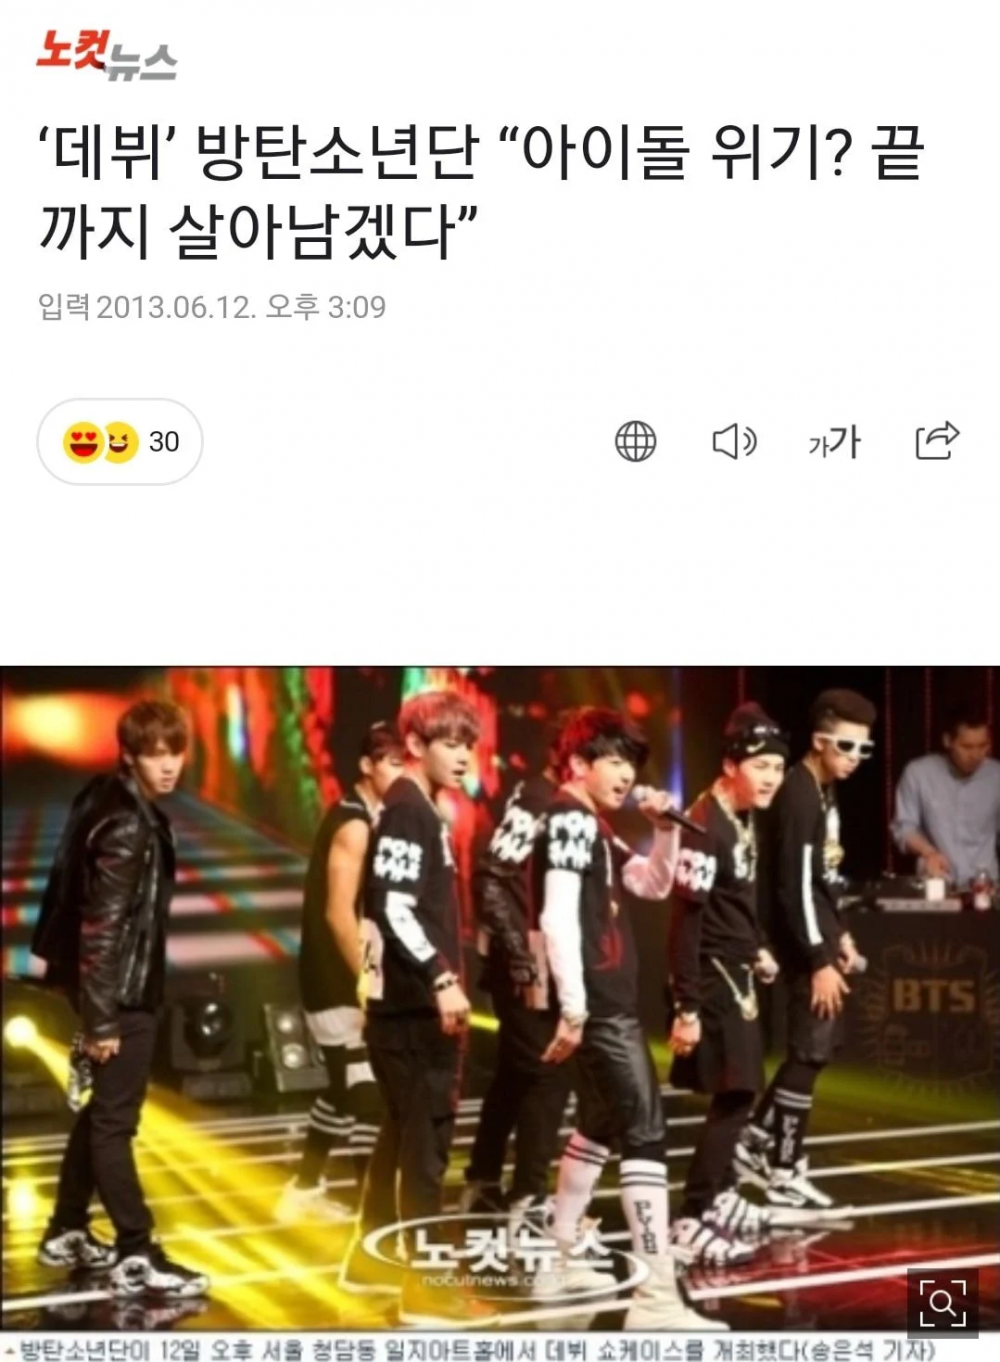 Пользователи сети говорят, что история BTS похожа на фильм